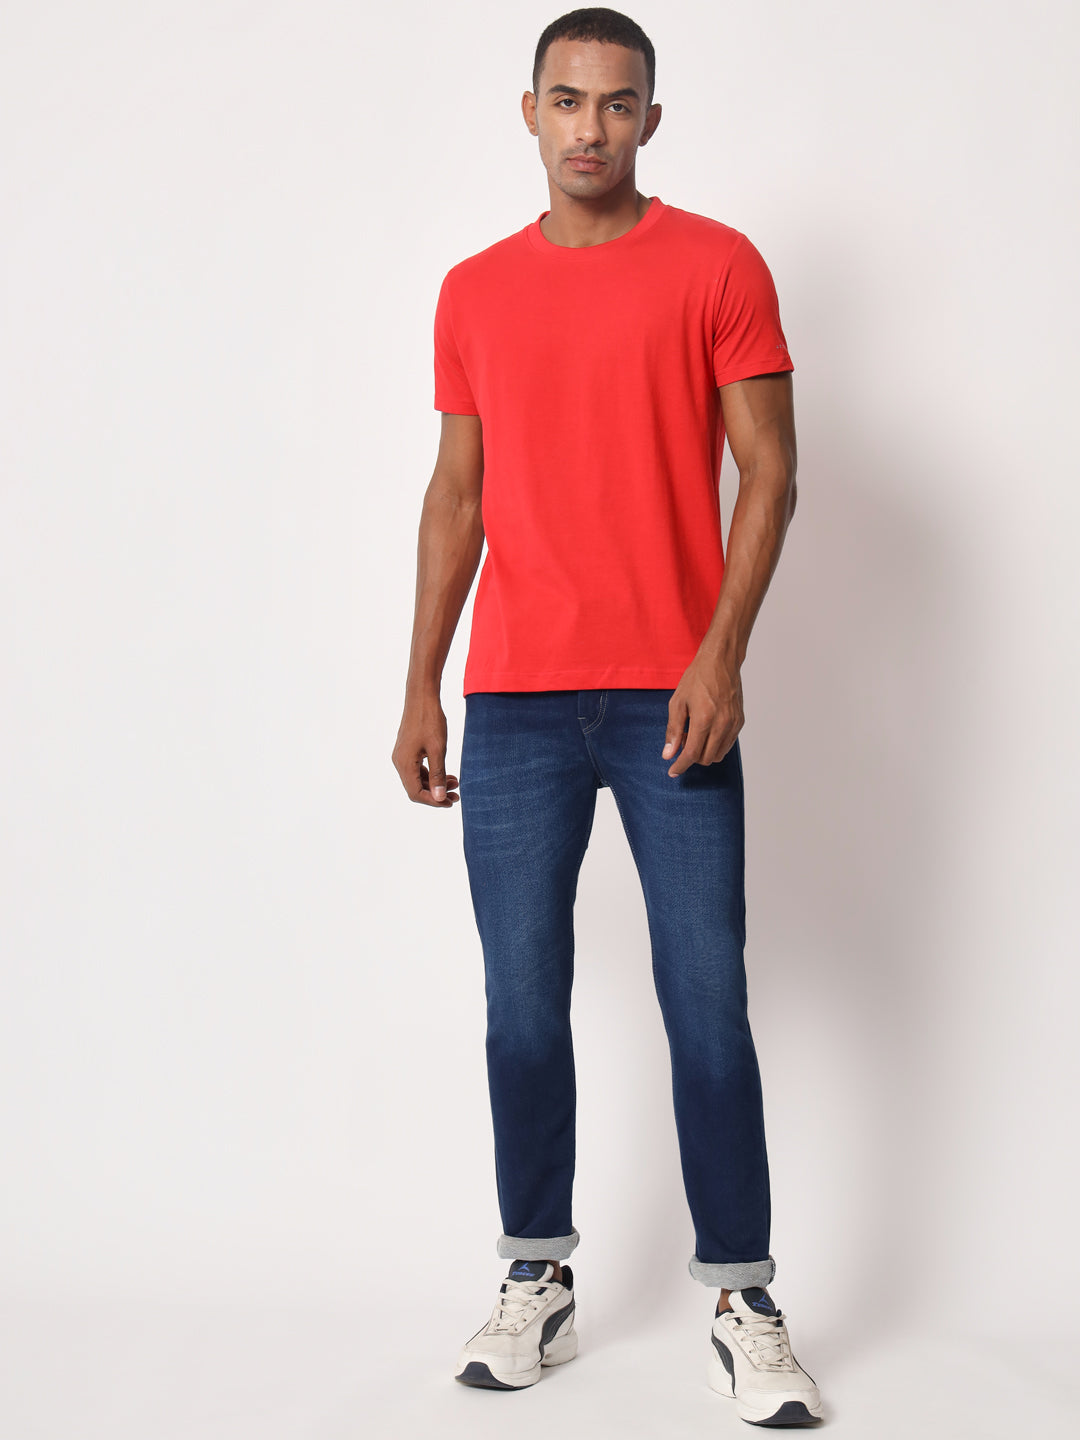 Solid Men Round Neck Half Sleeve Red Cotton T-shirt